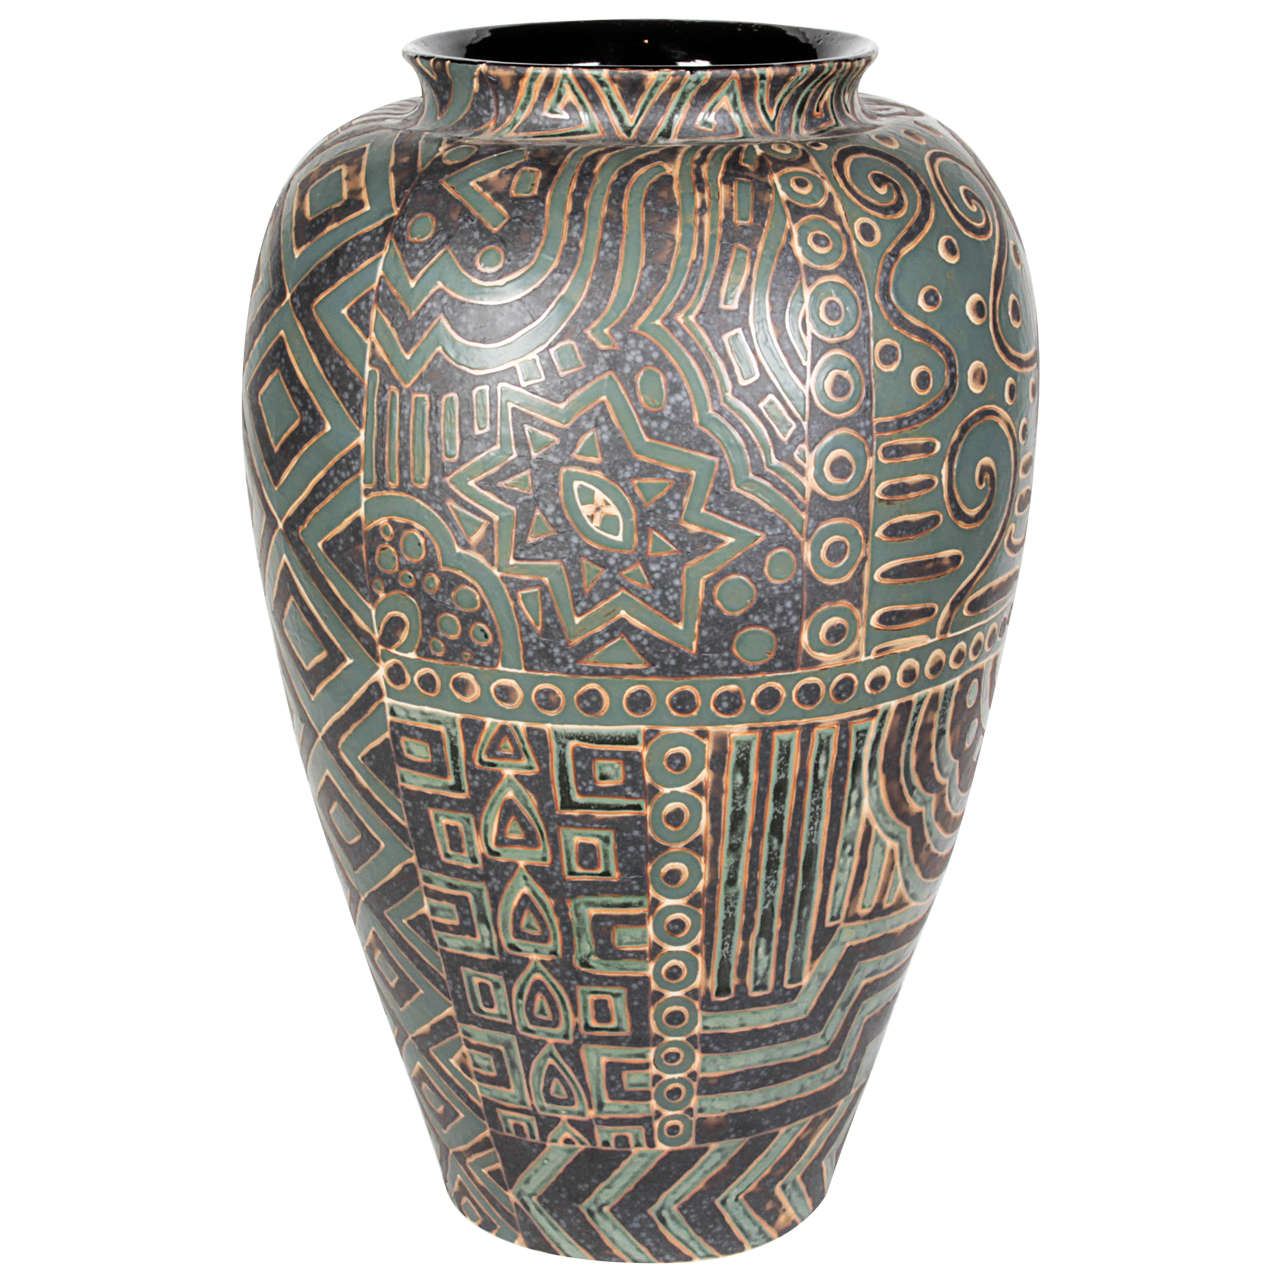 Thai ceramic vase, 2014